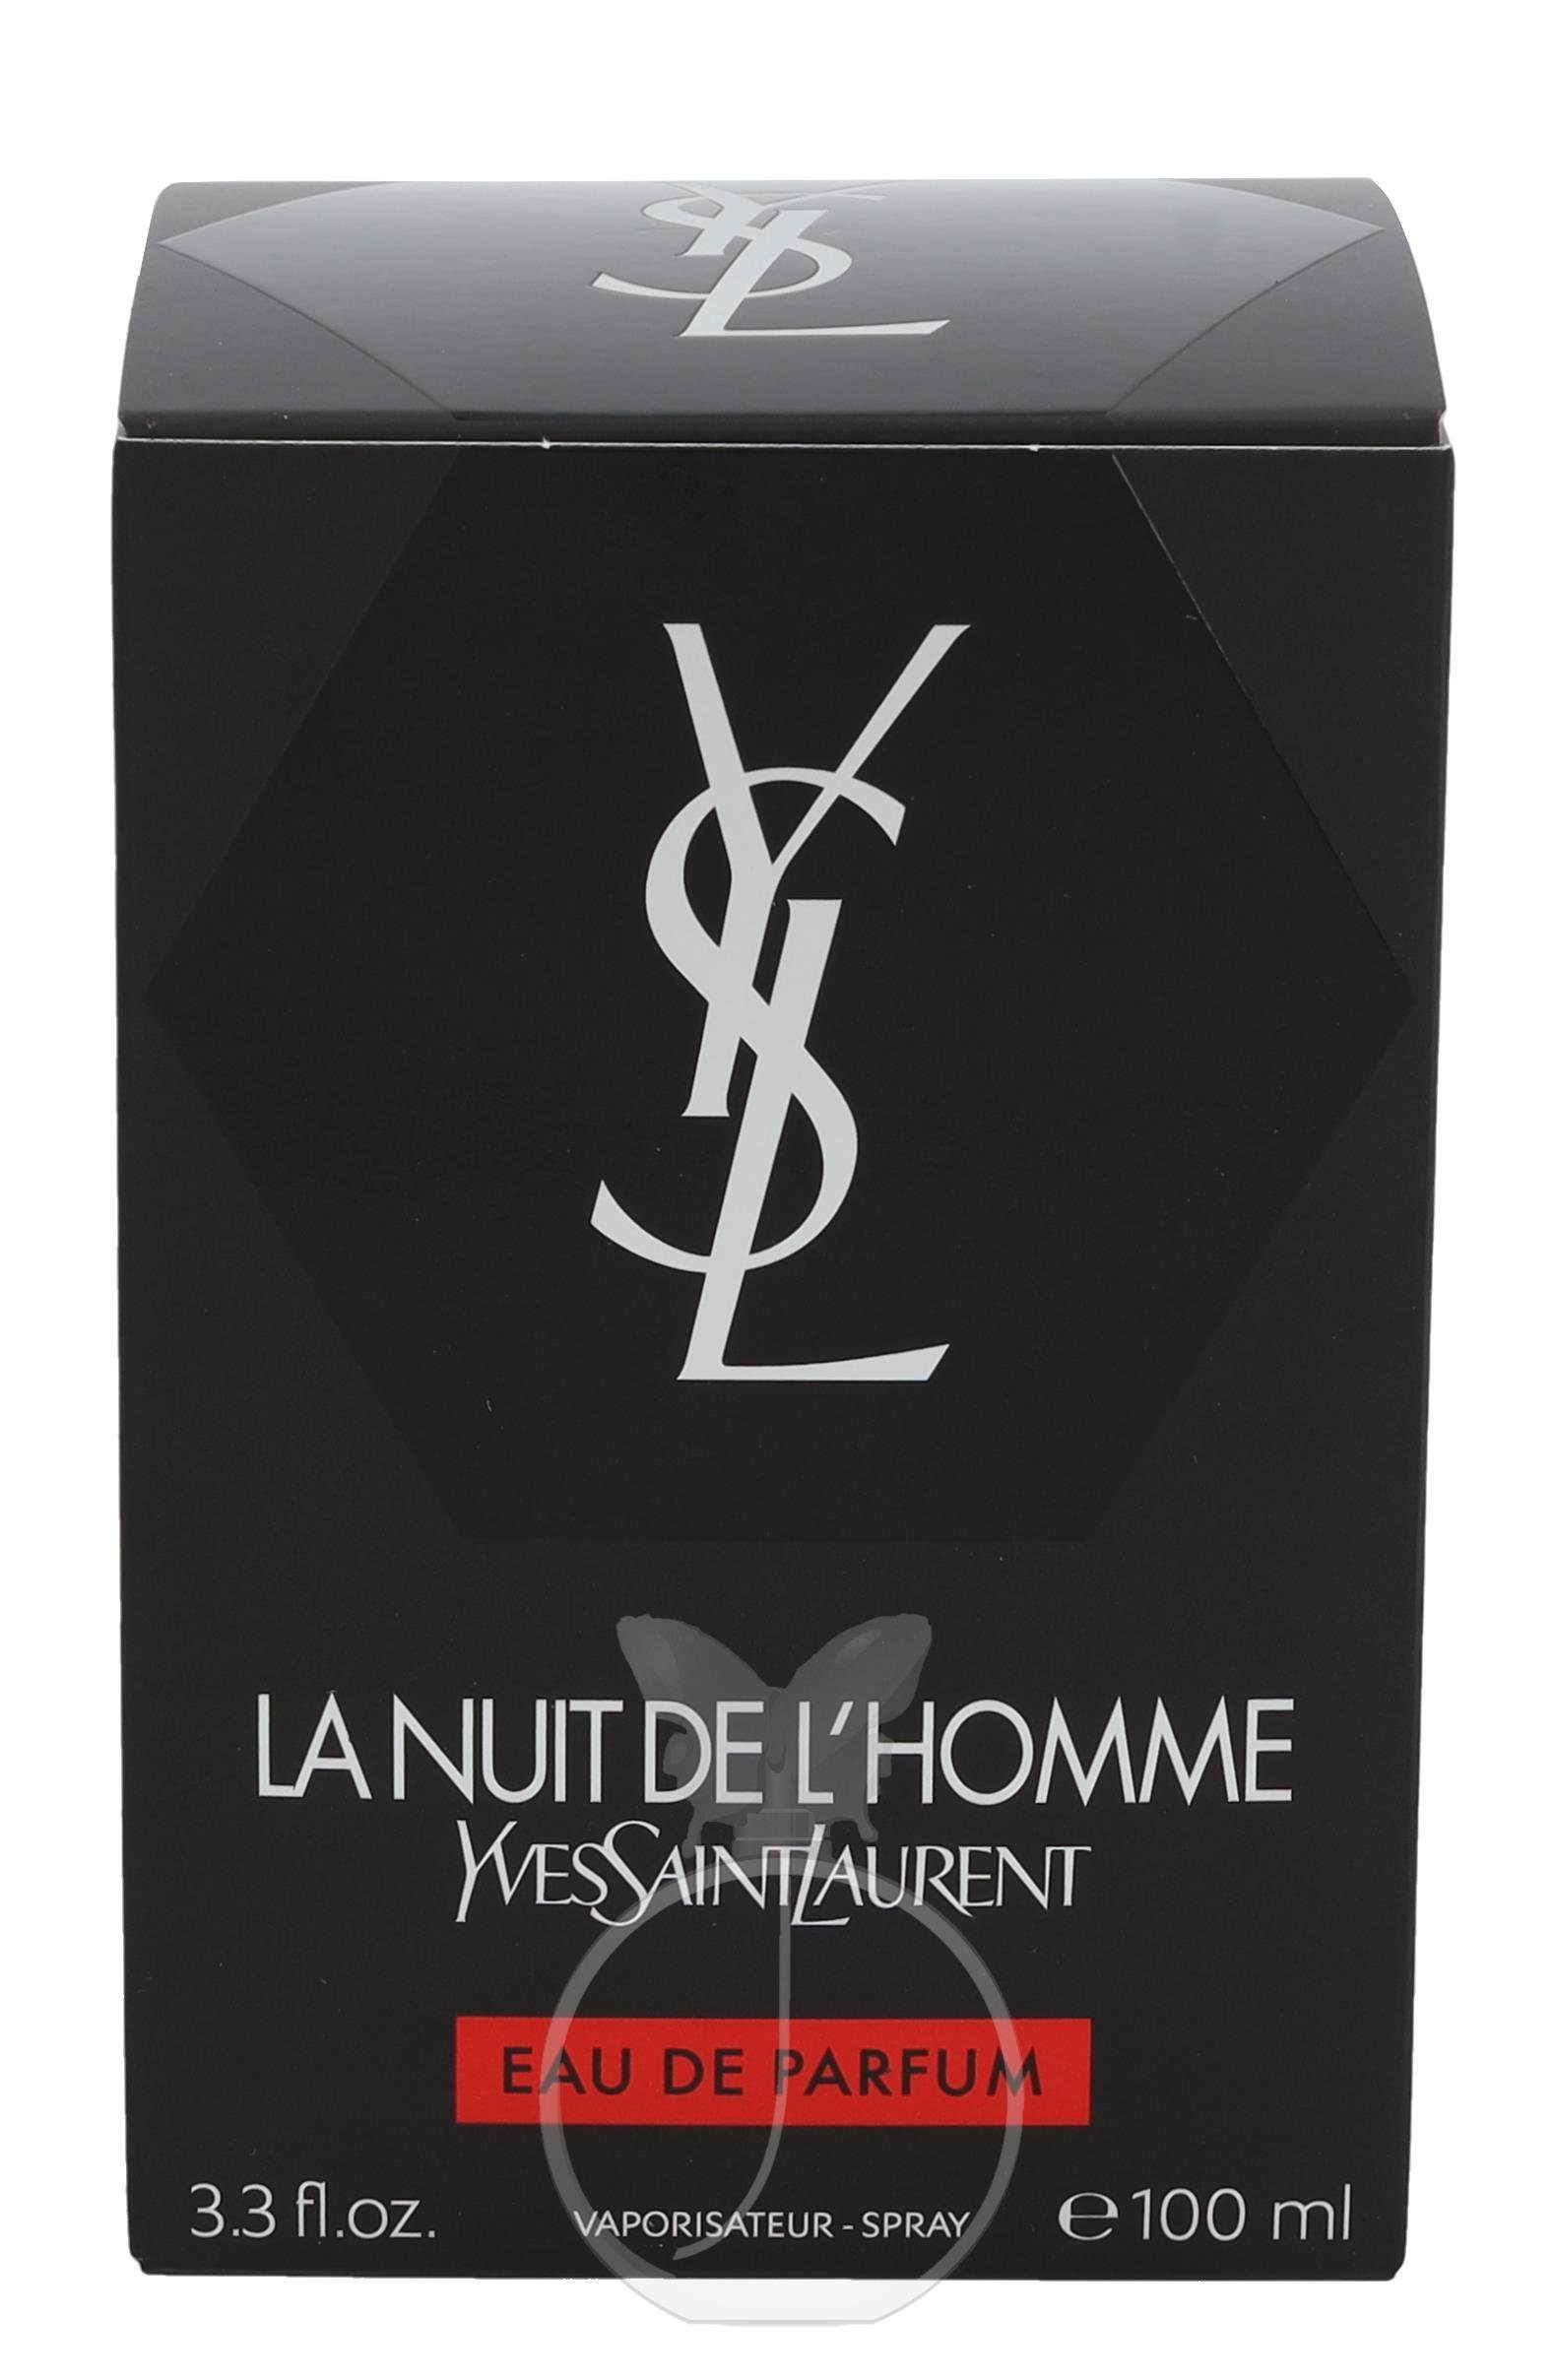 Saint De Nuit YVES Parfum de Eau La de Laurent Parfum Eau L'Homme Yves LAURENT SAINT